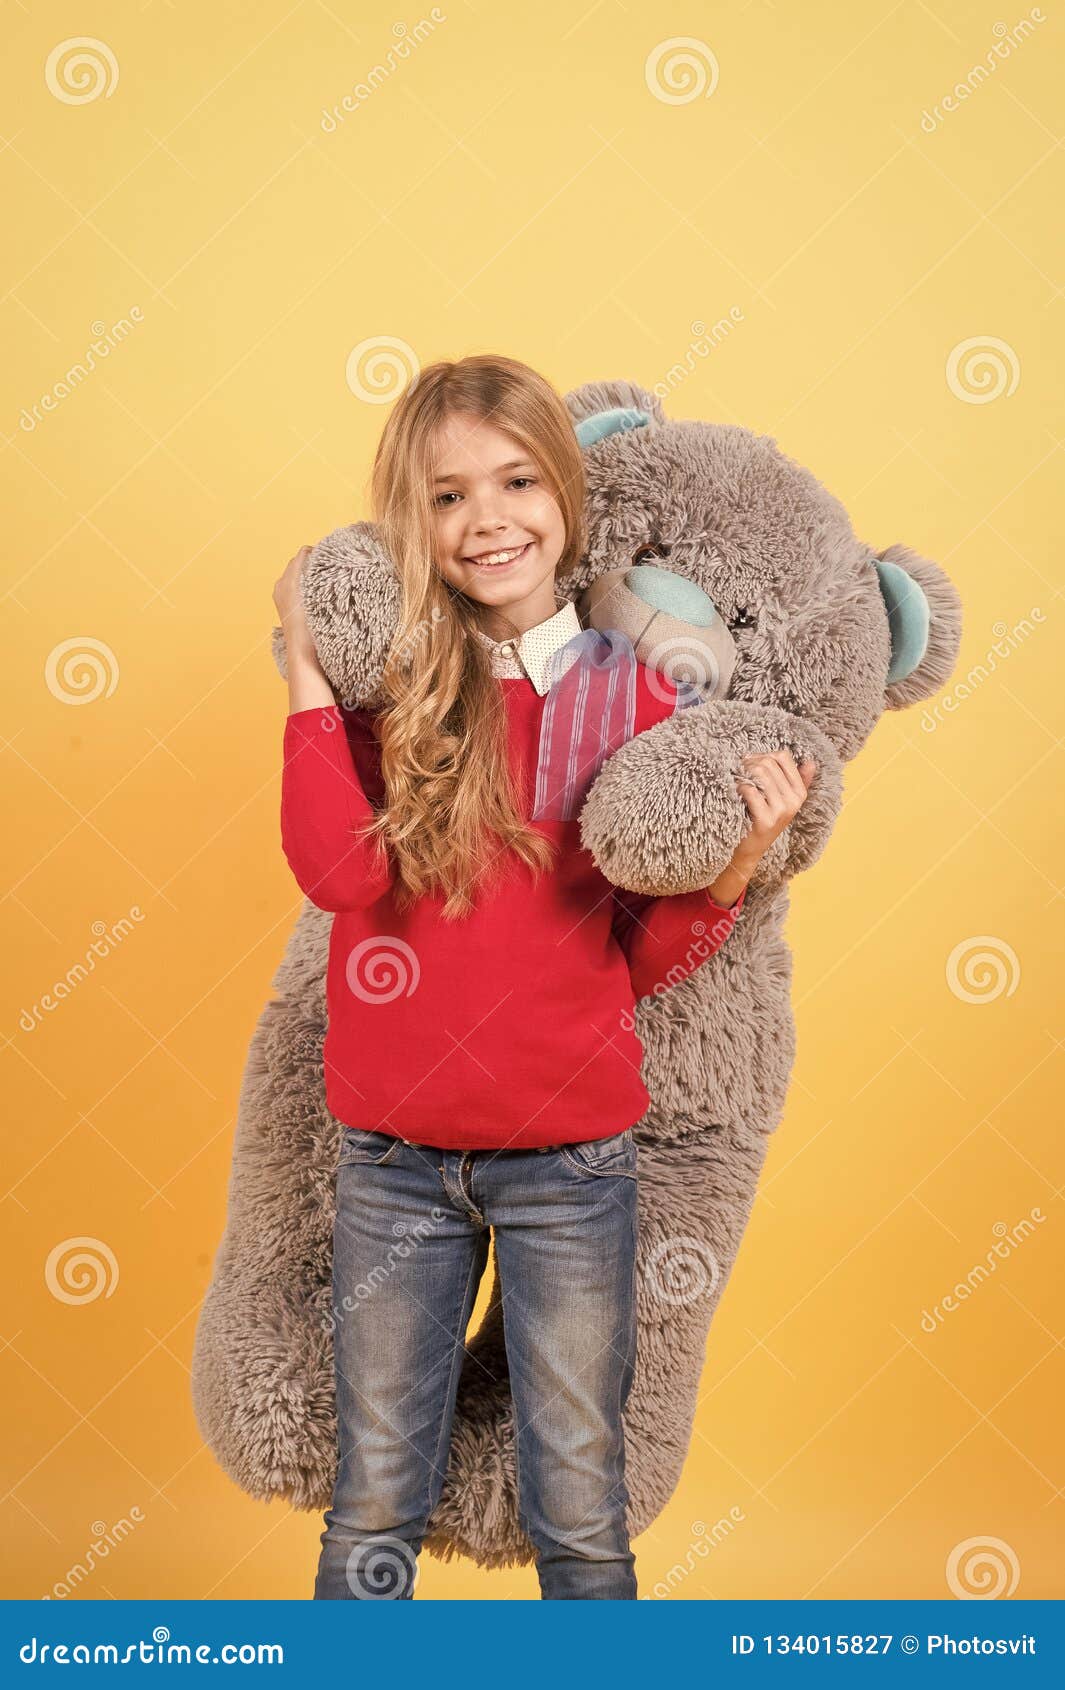 Girl Hug Big Teddy Bear on Orange Background Stock Image - Image of ...